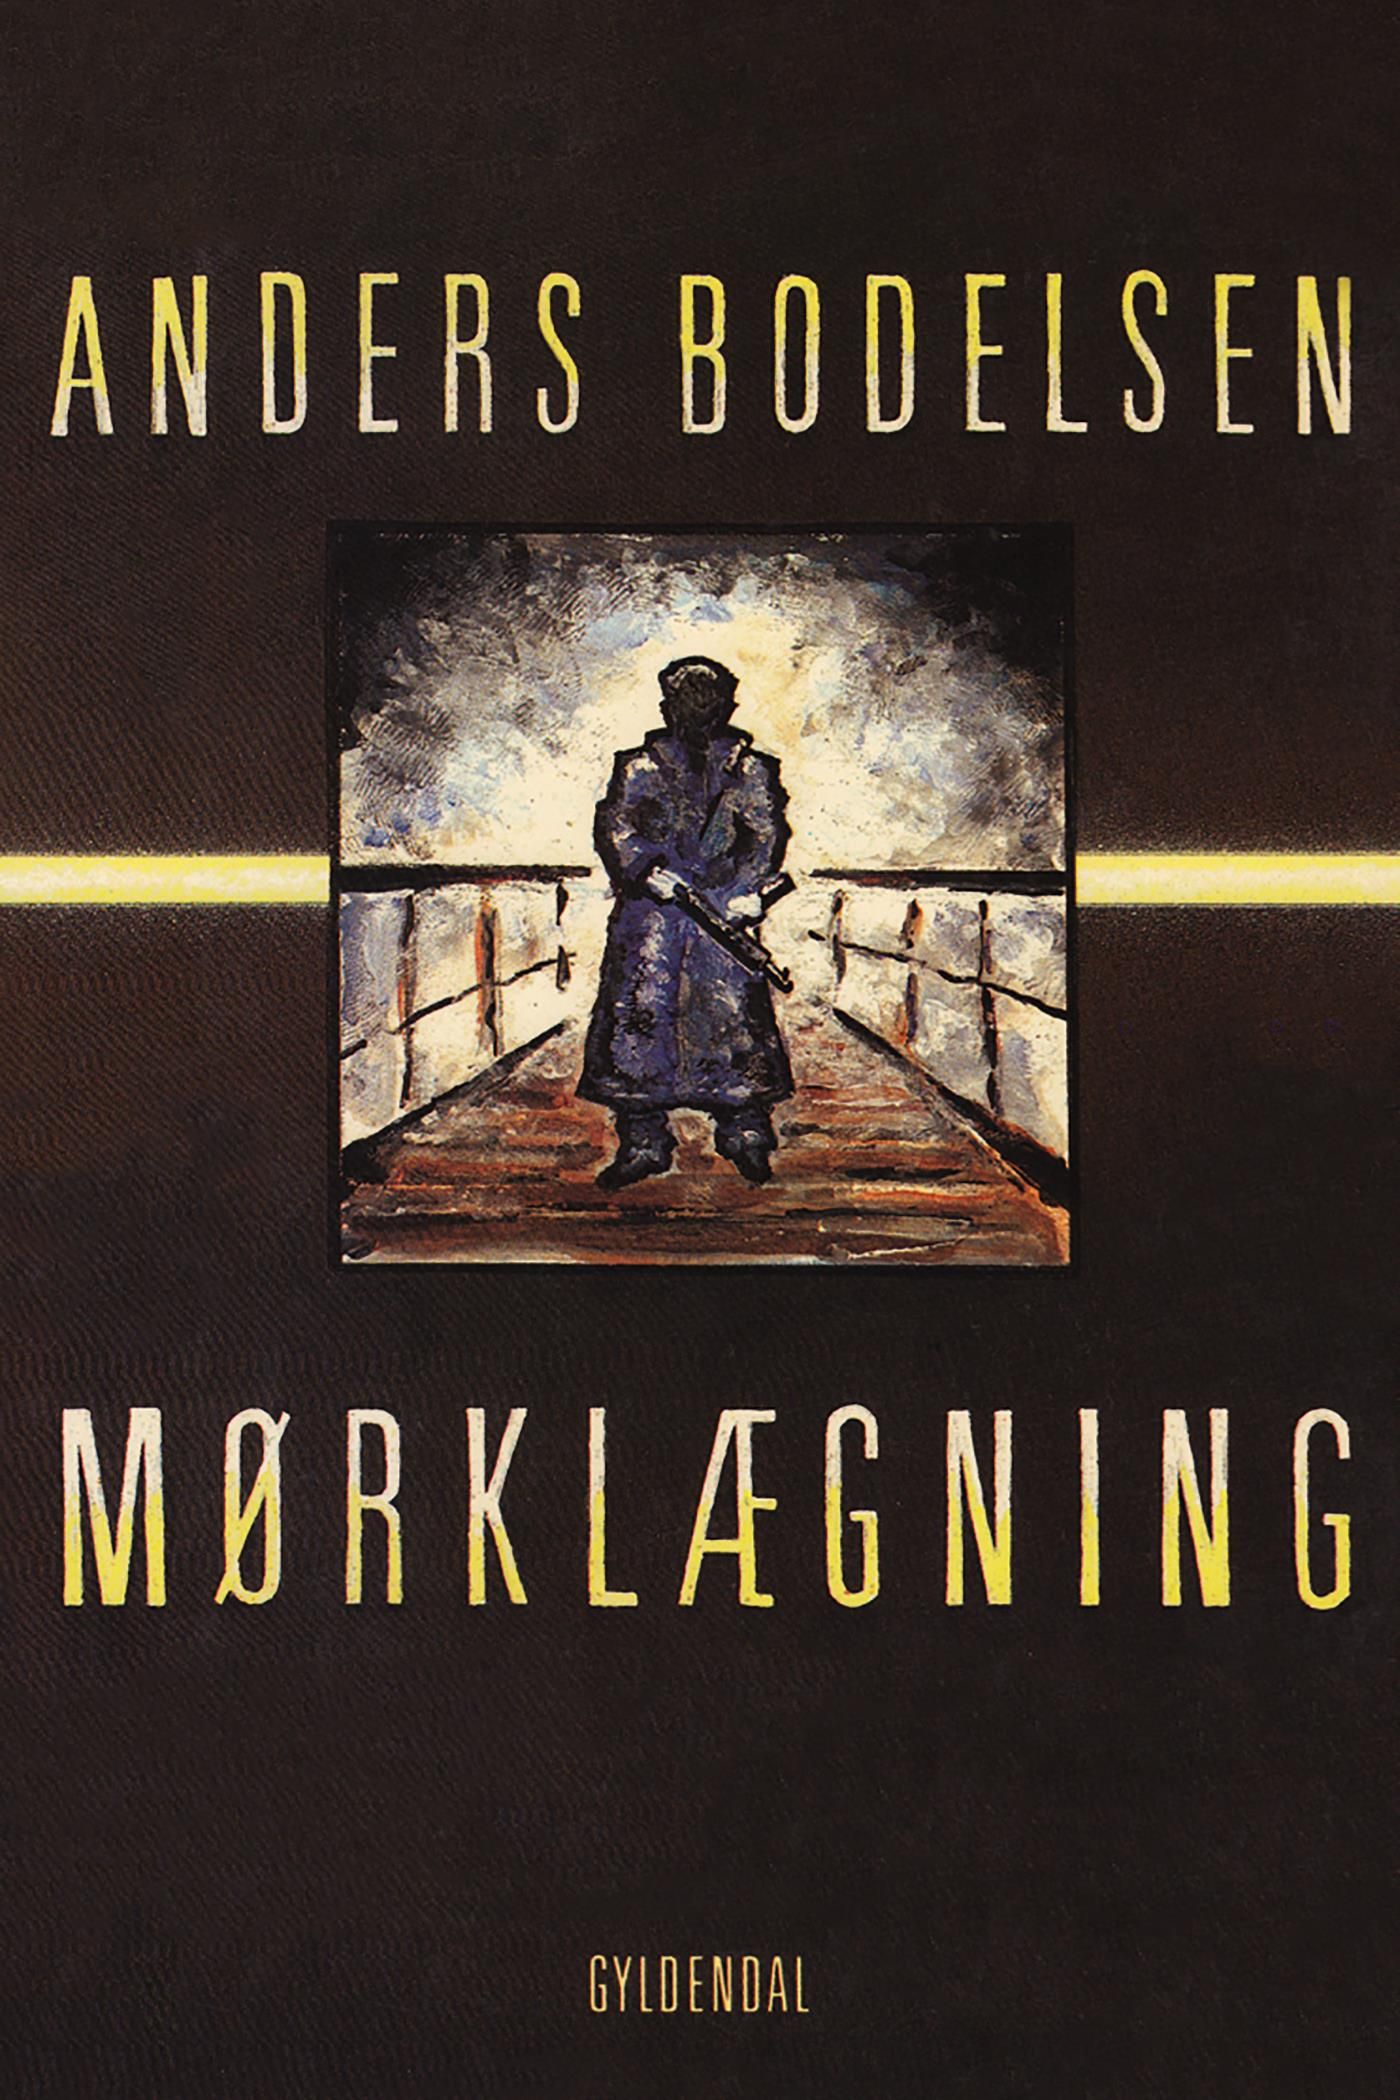 Mørklægning, e-bok av Anders Bodelsen